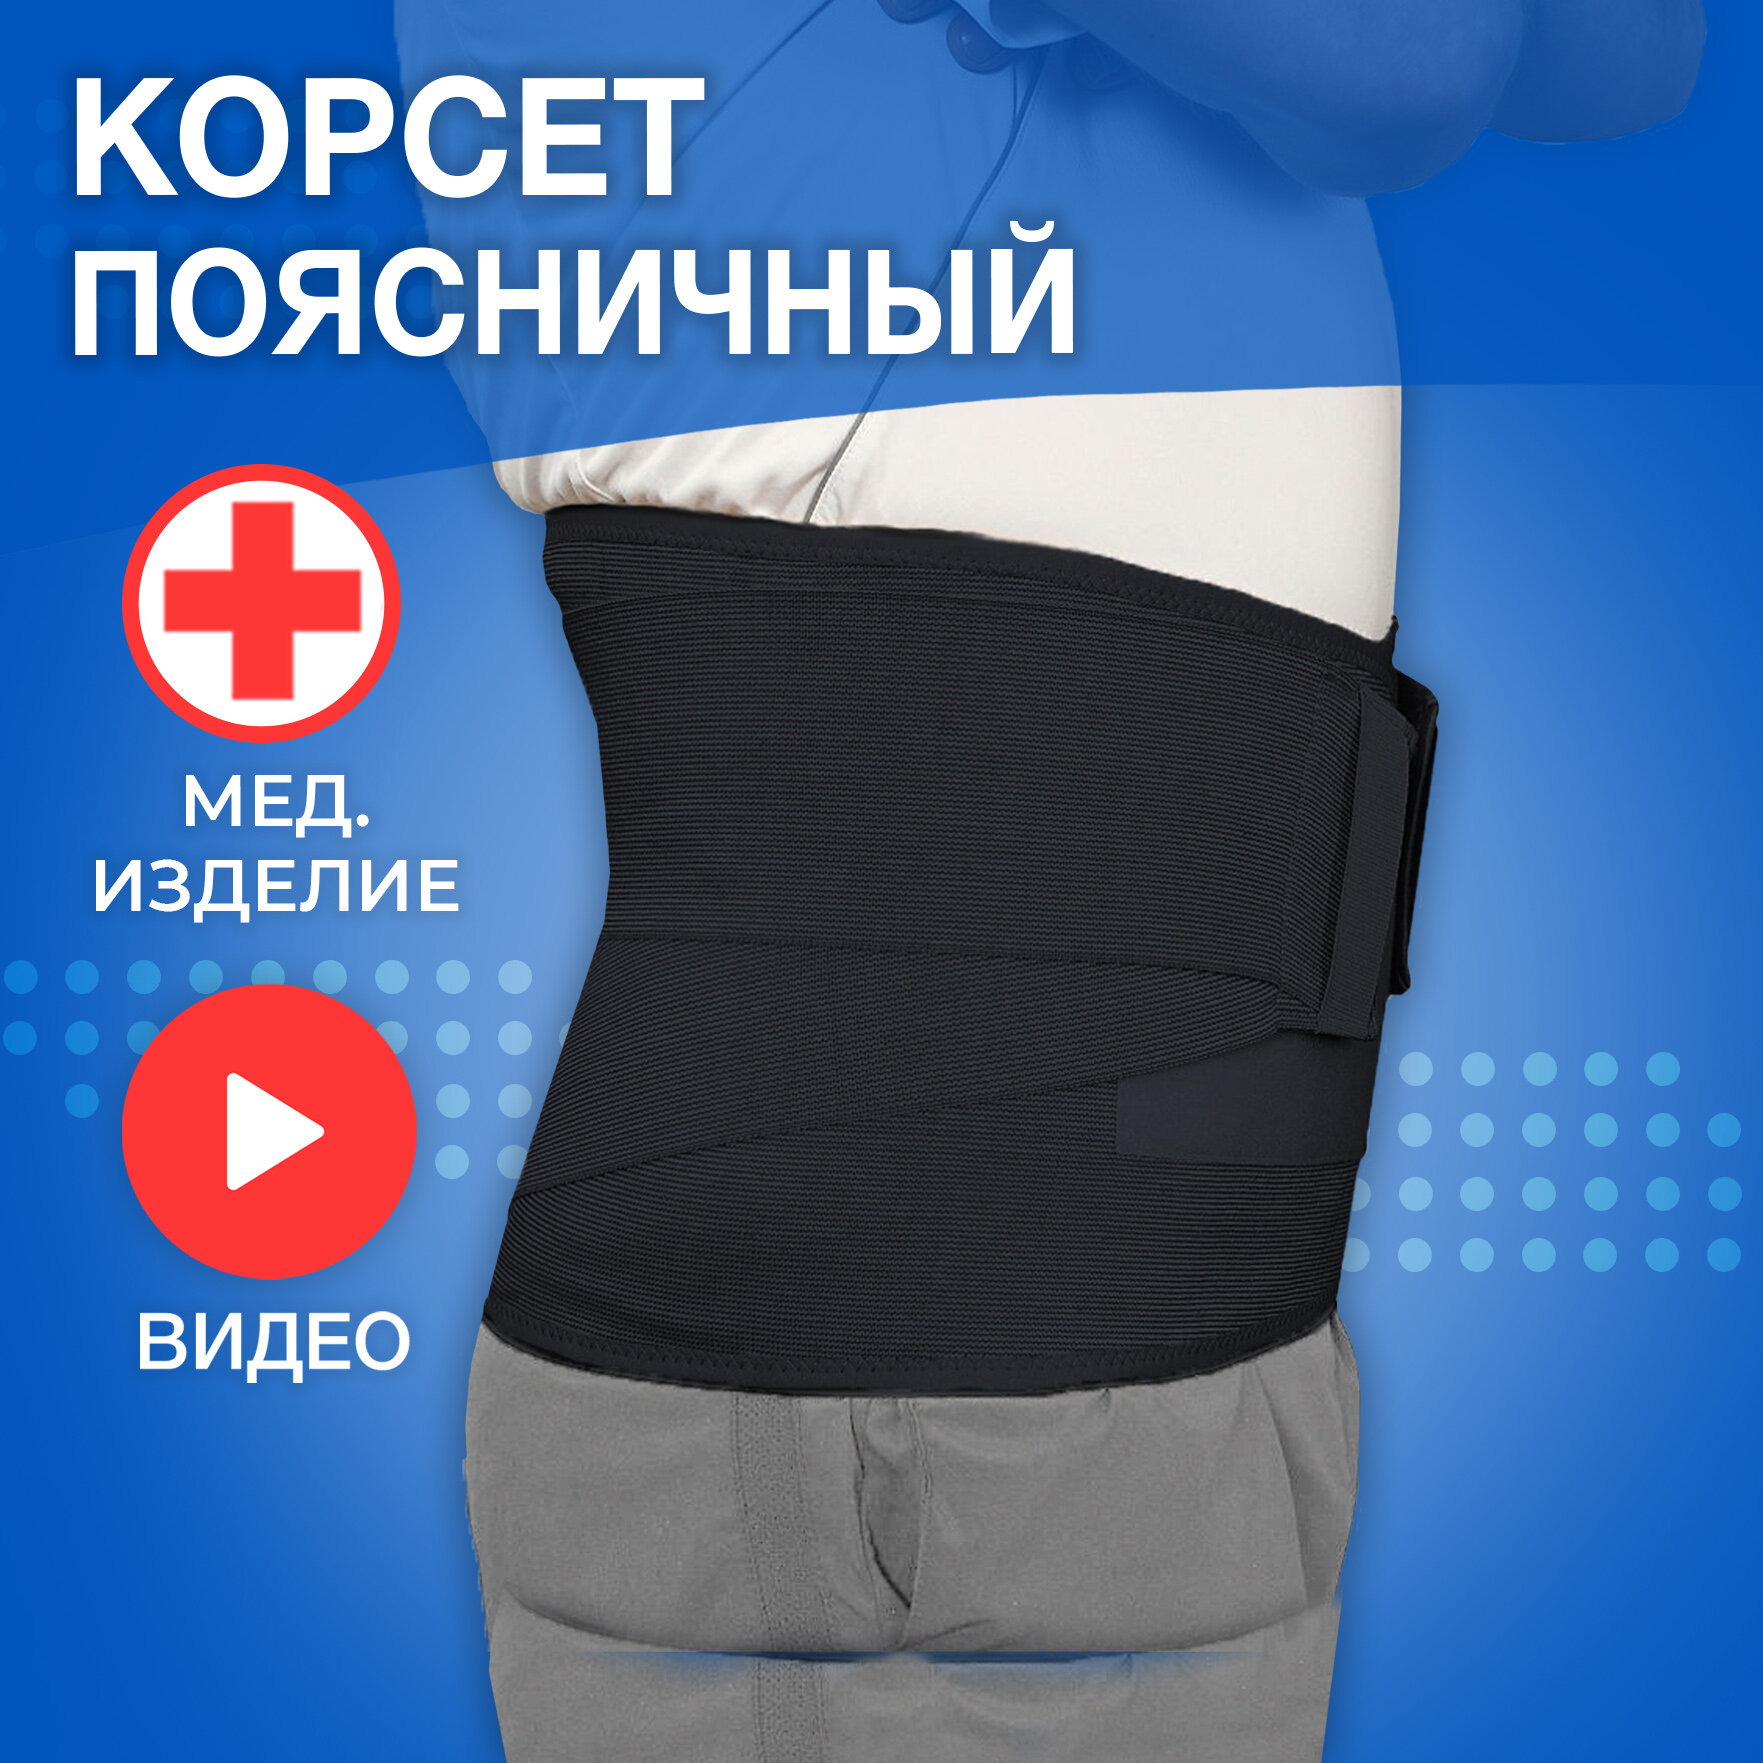 Бандаж брюшной поддерживающий усиленный / Пояс для спины / Корсет ортопедический поясничный. Черный, 6 размер.